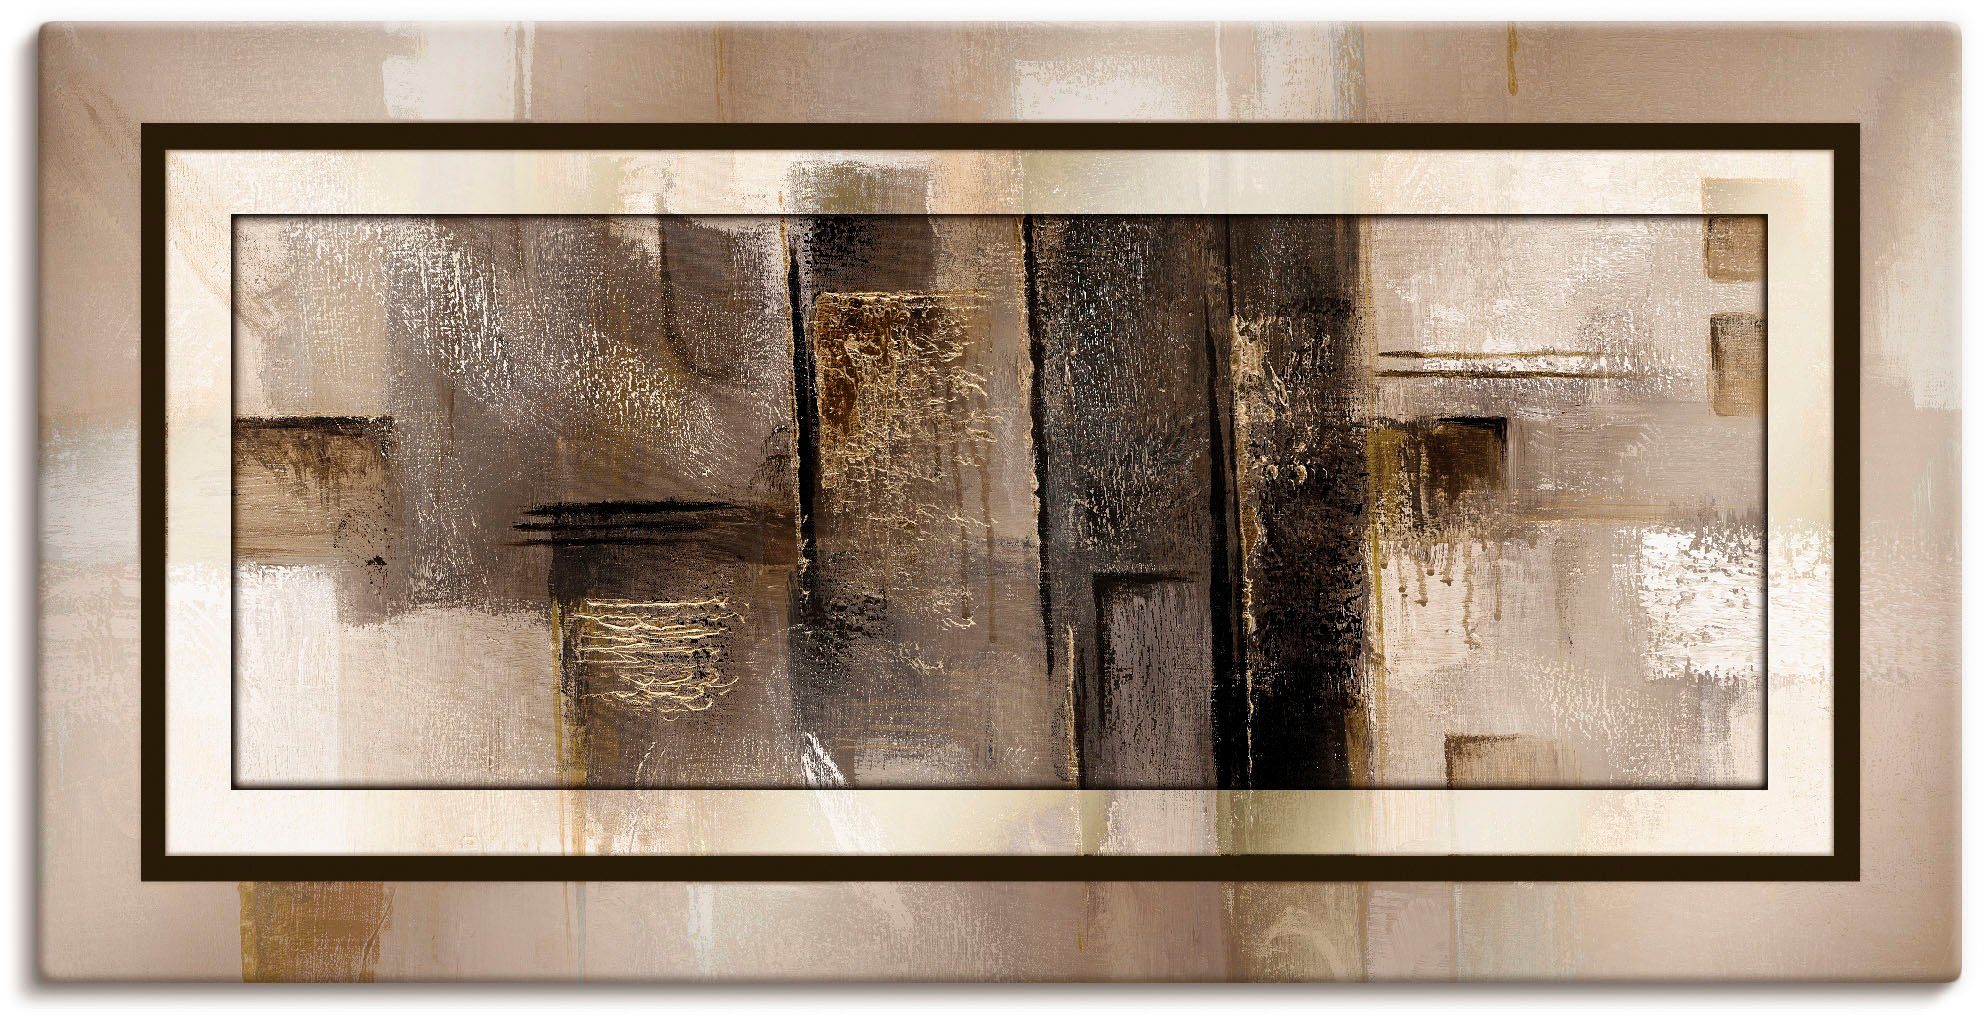 Artland Artprint Vierkanten - abstract 1 in vele afmetingen & productsoorten - artprint van aluminium / artprint voor buiten, artprint op linnen, poster, muursticker / wandfolie oo